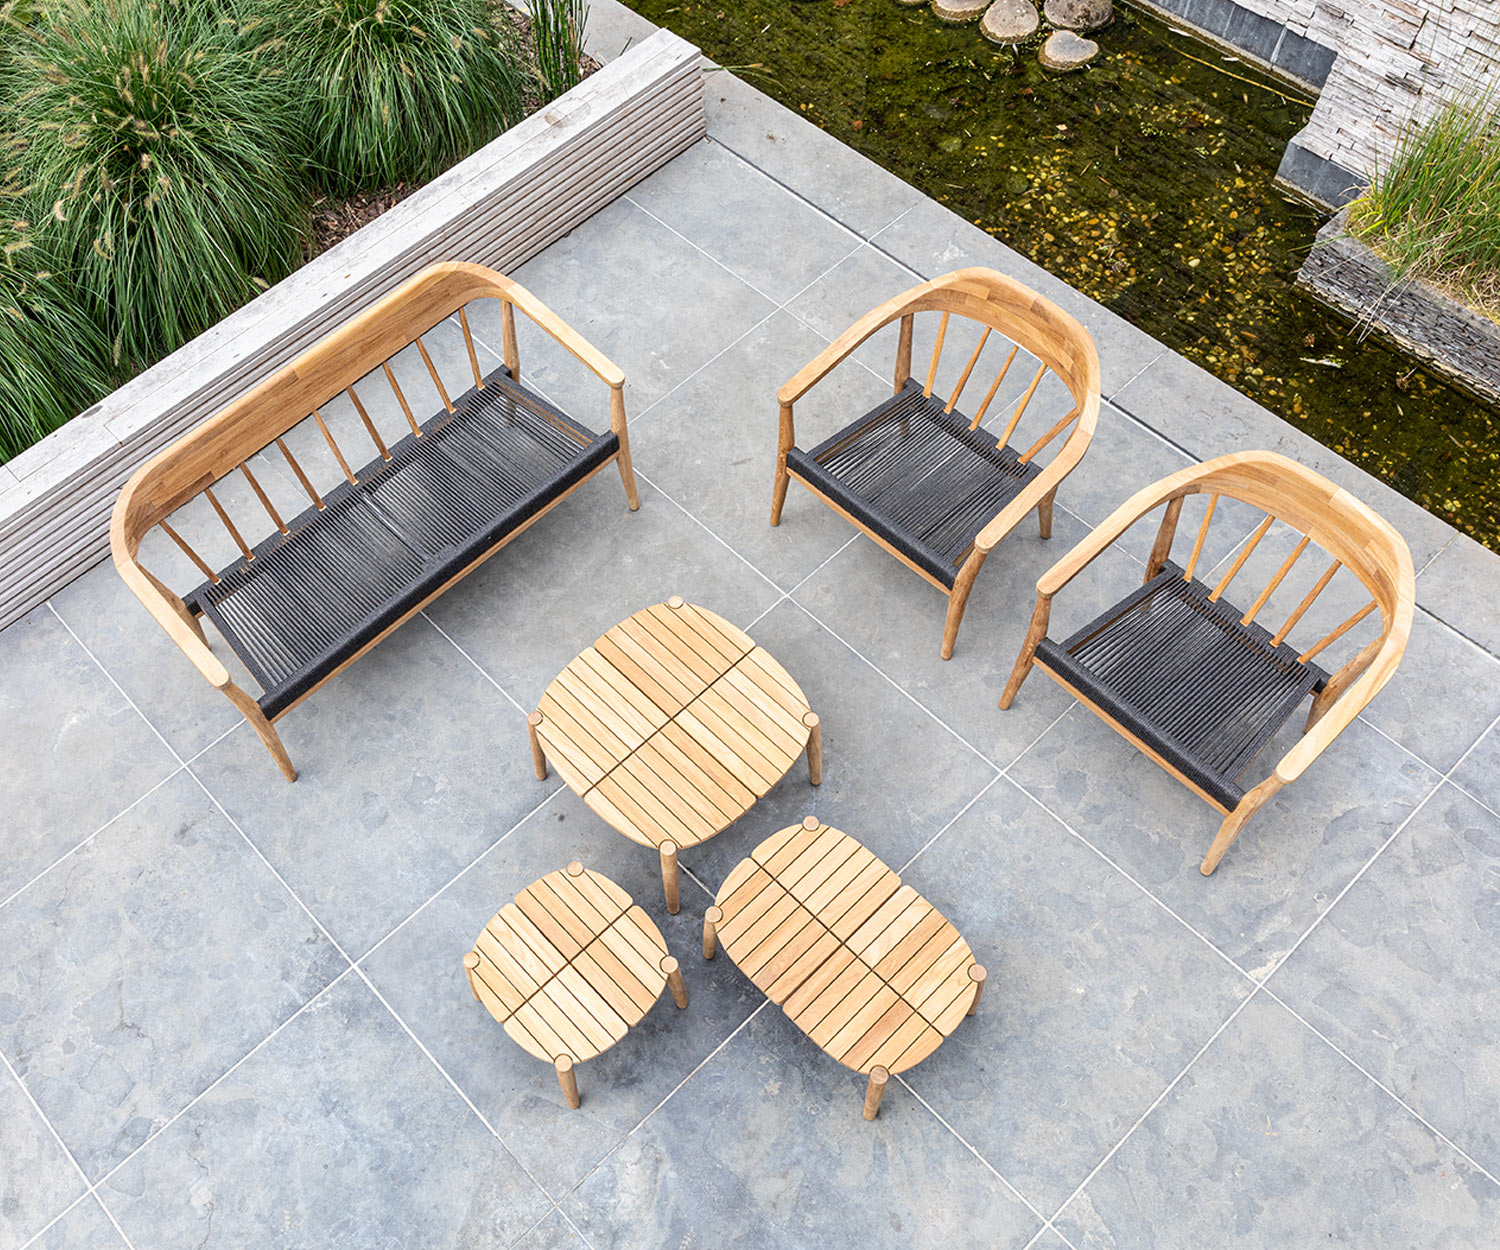 Exclusive Oasiq Copenhagen design coffee table terrace garden teak